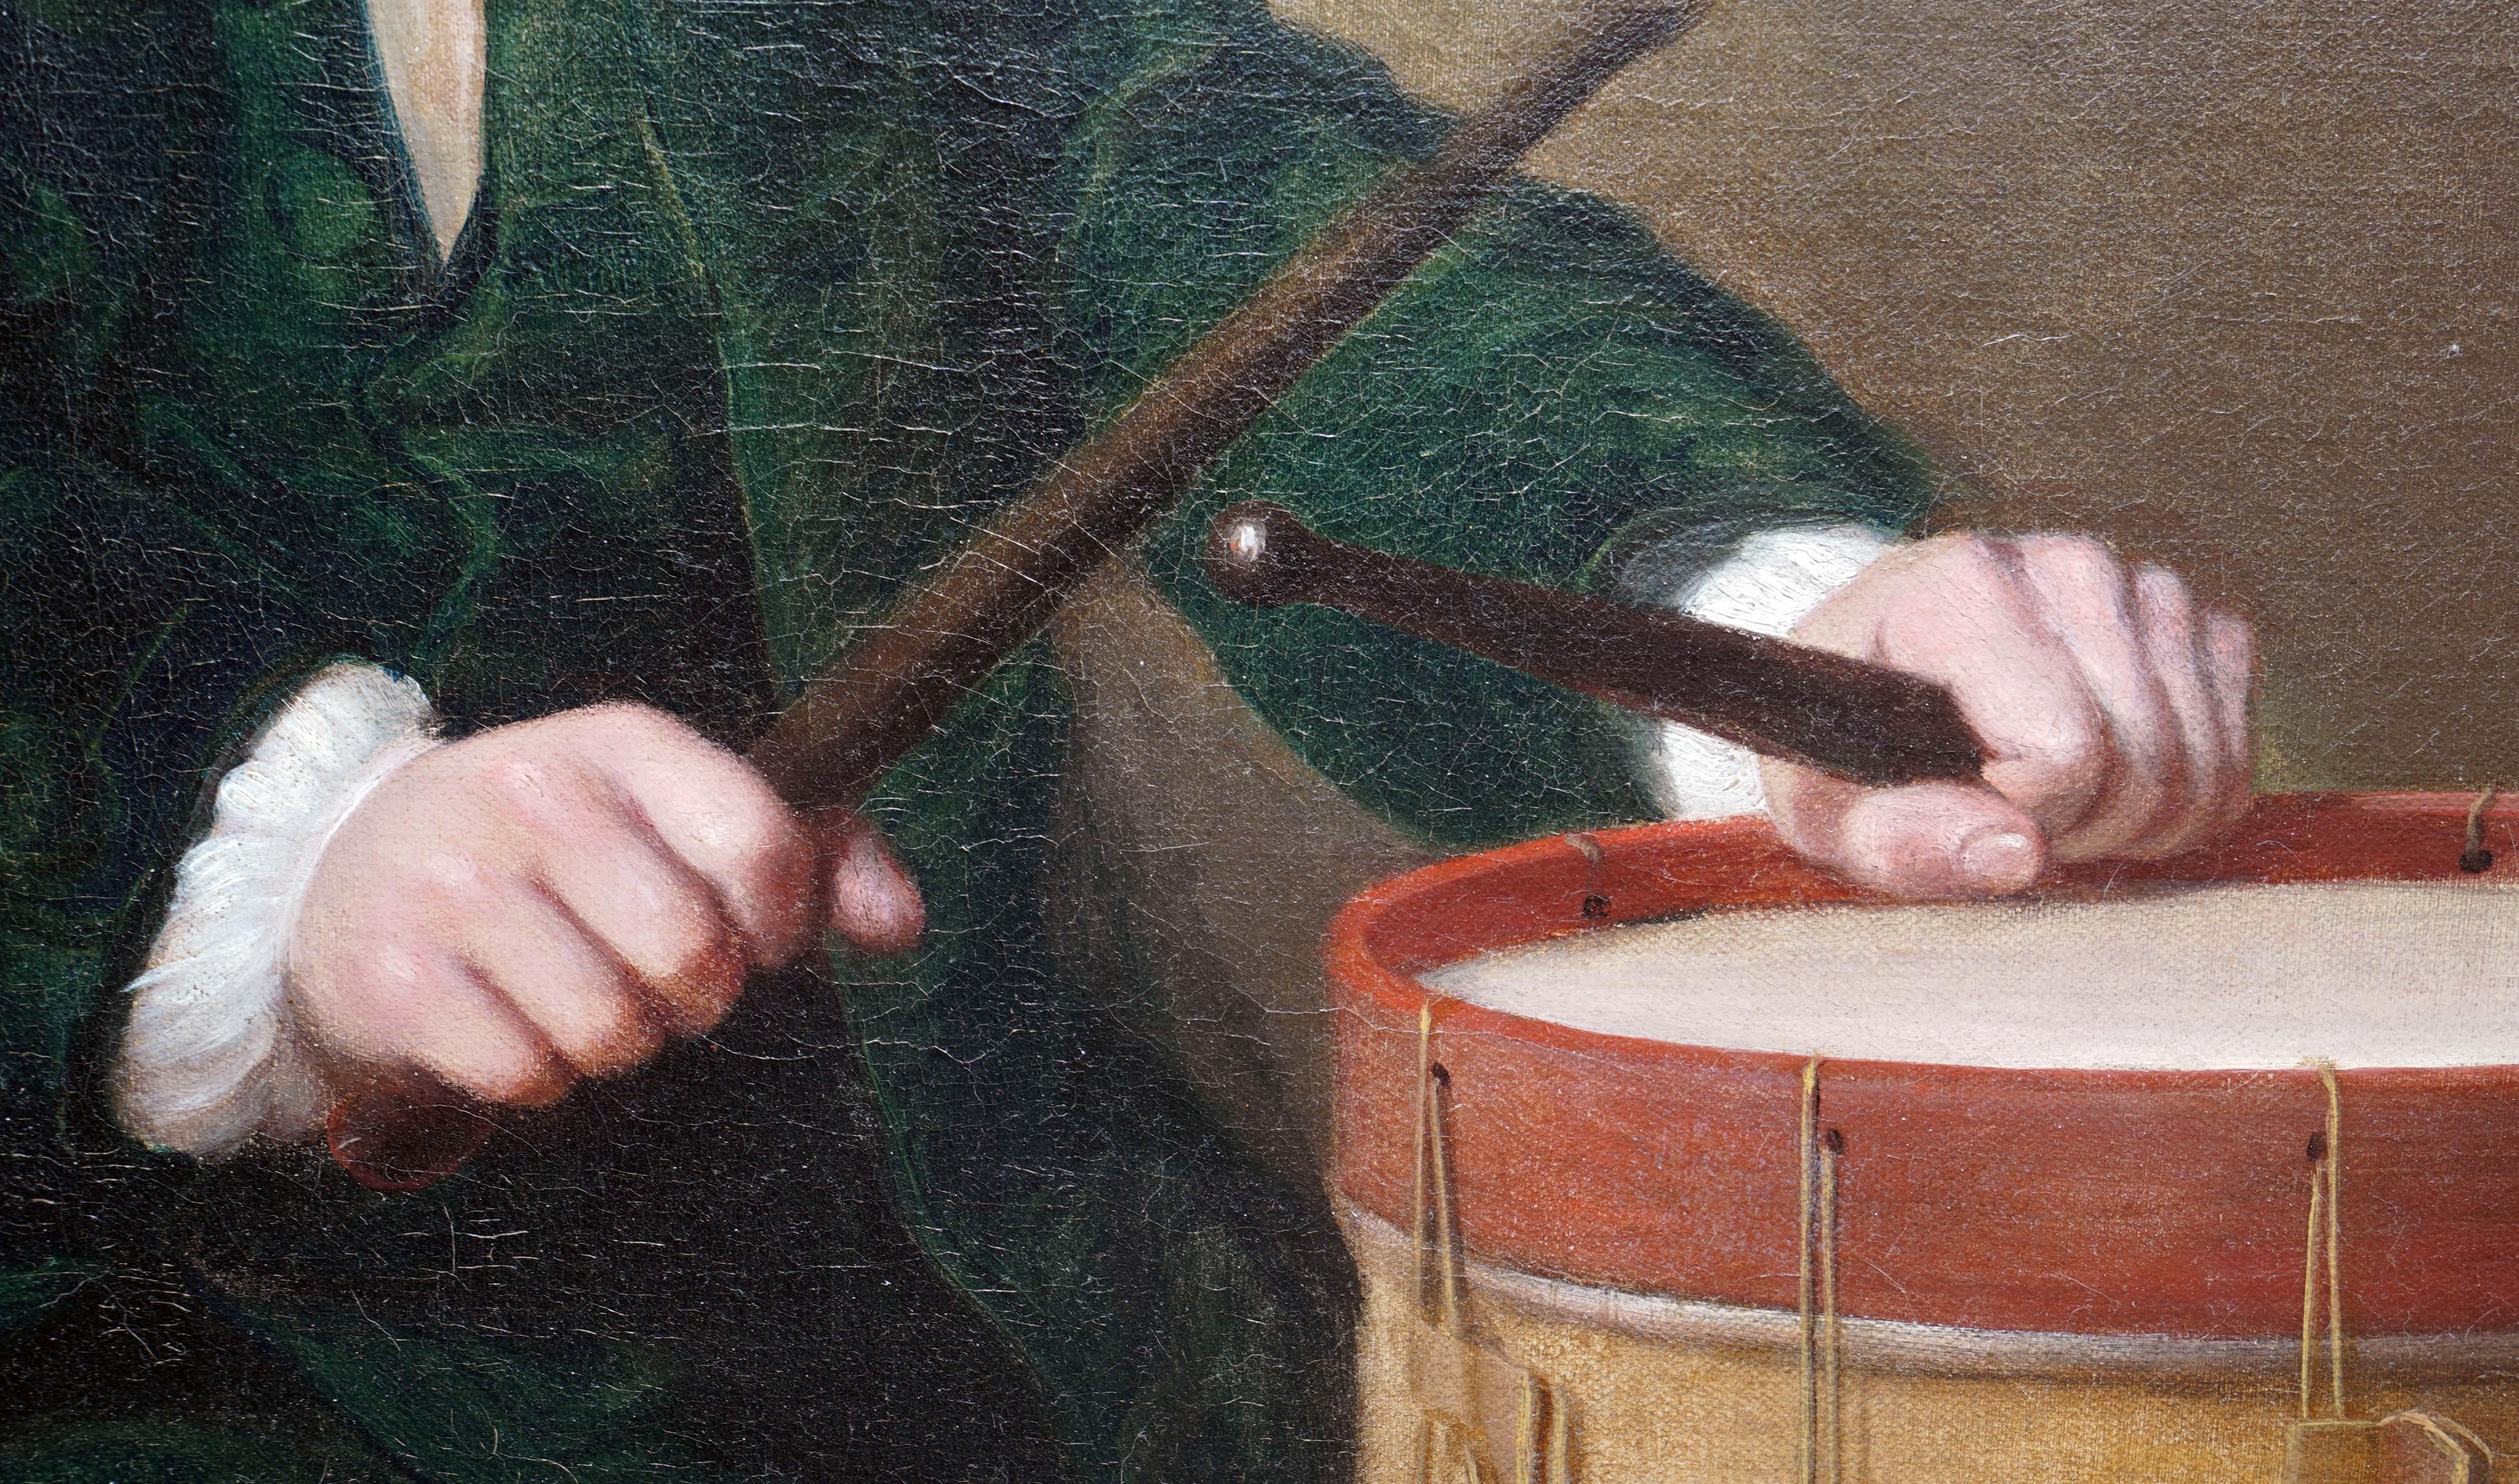 SUR LE SUJET :
Dans ce portrait du XVIIIe siècle, Katherine Read a dépeint Daniel Giles comme un enfant assis sur un tapis, jouant avec son tambour et son chapeau à côté de lui. Les détails des ornements tels que le tapis à motifs, les plis du